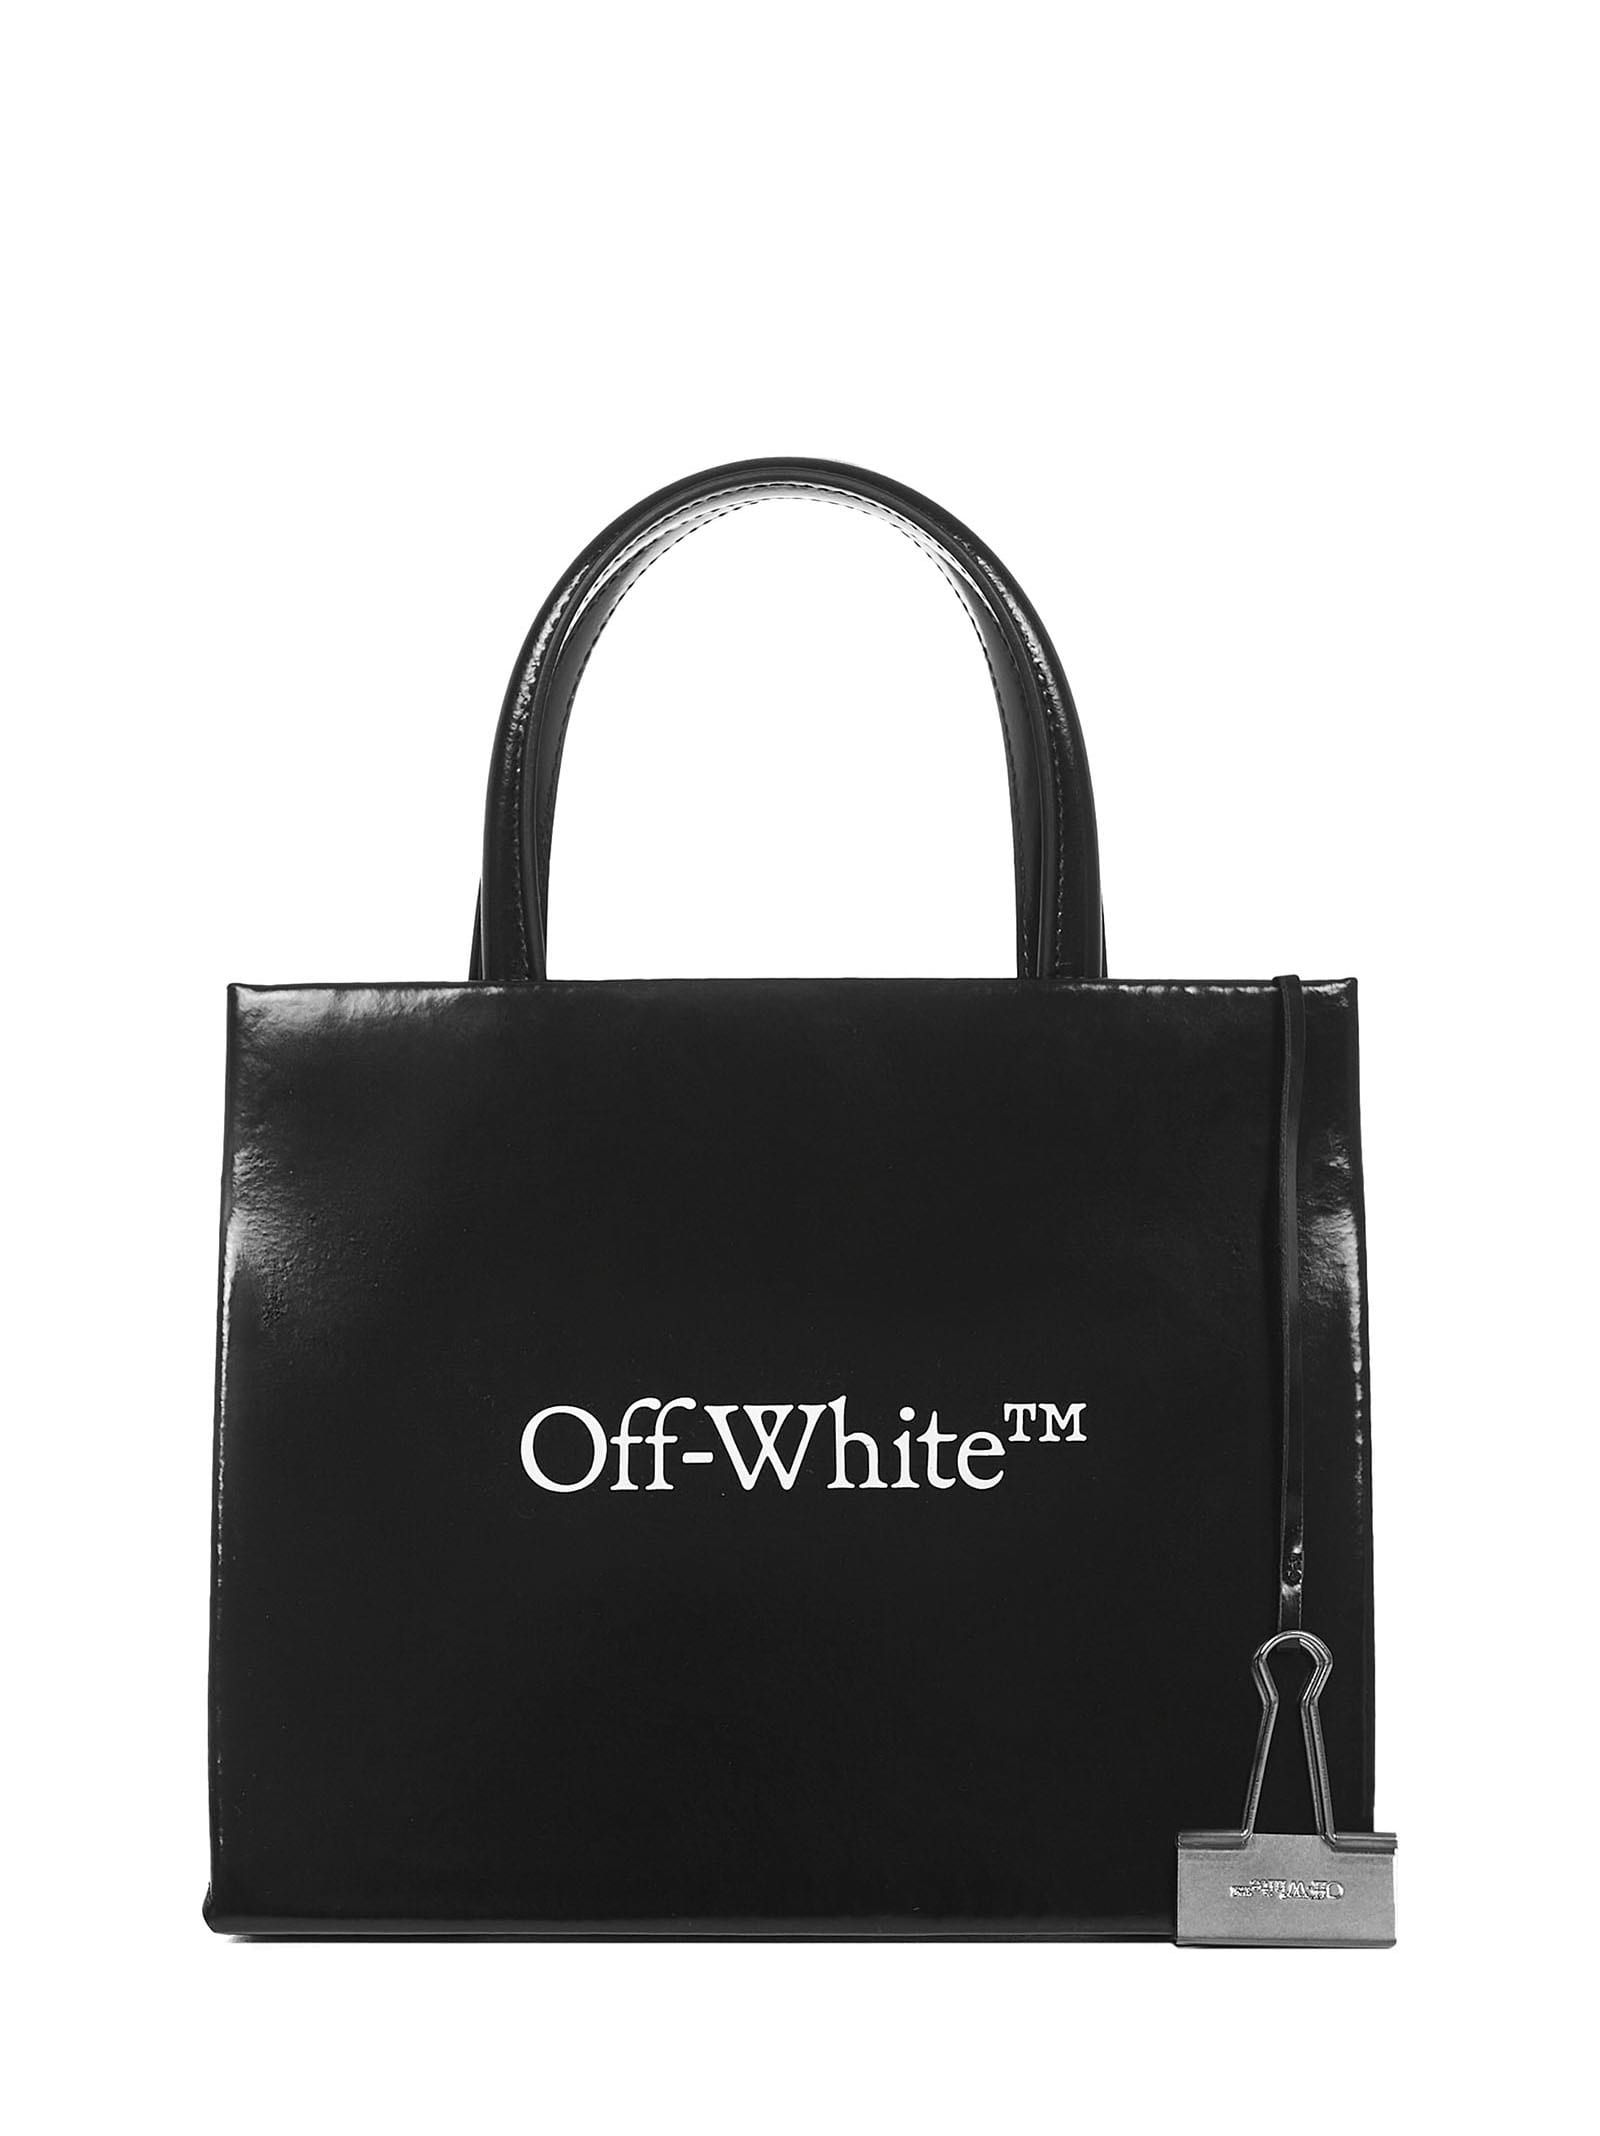 Off-white Box Handbag